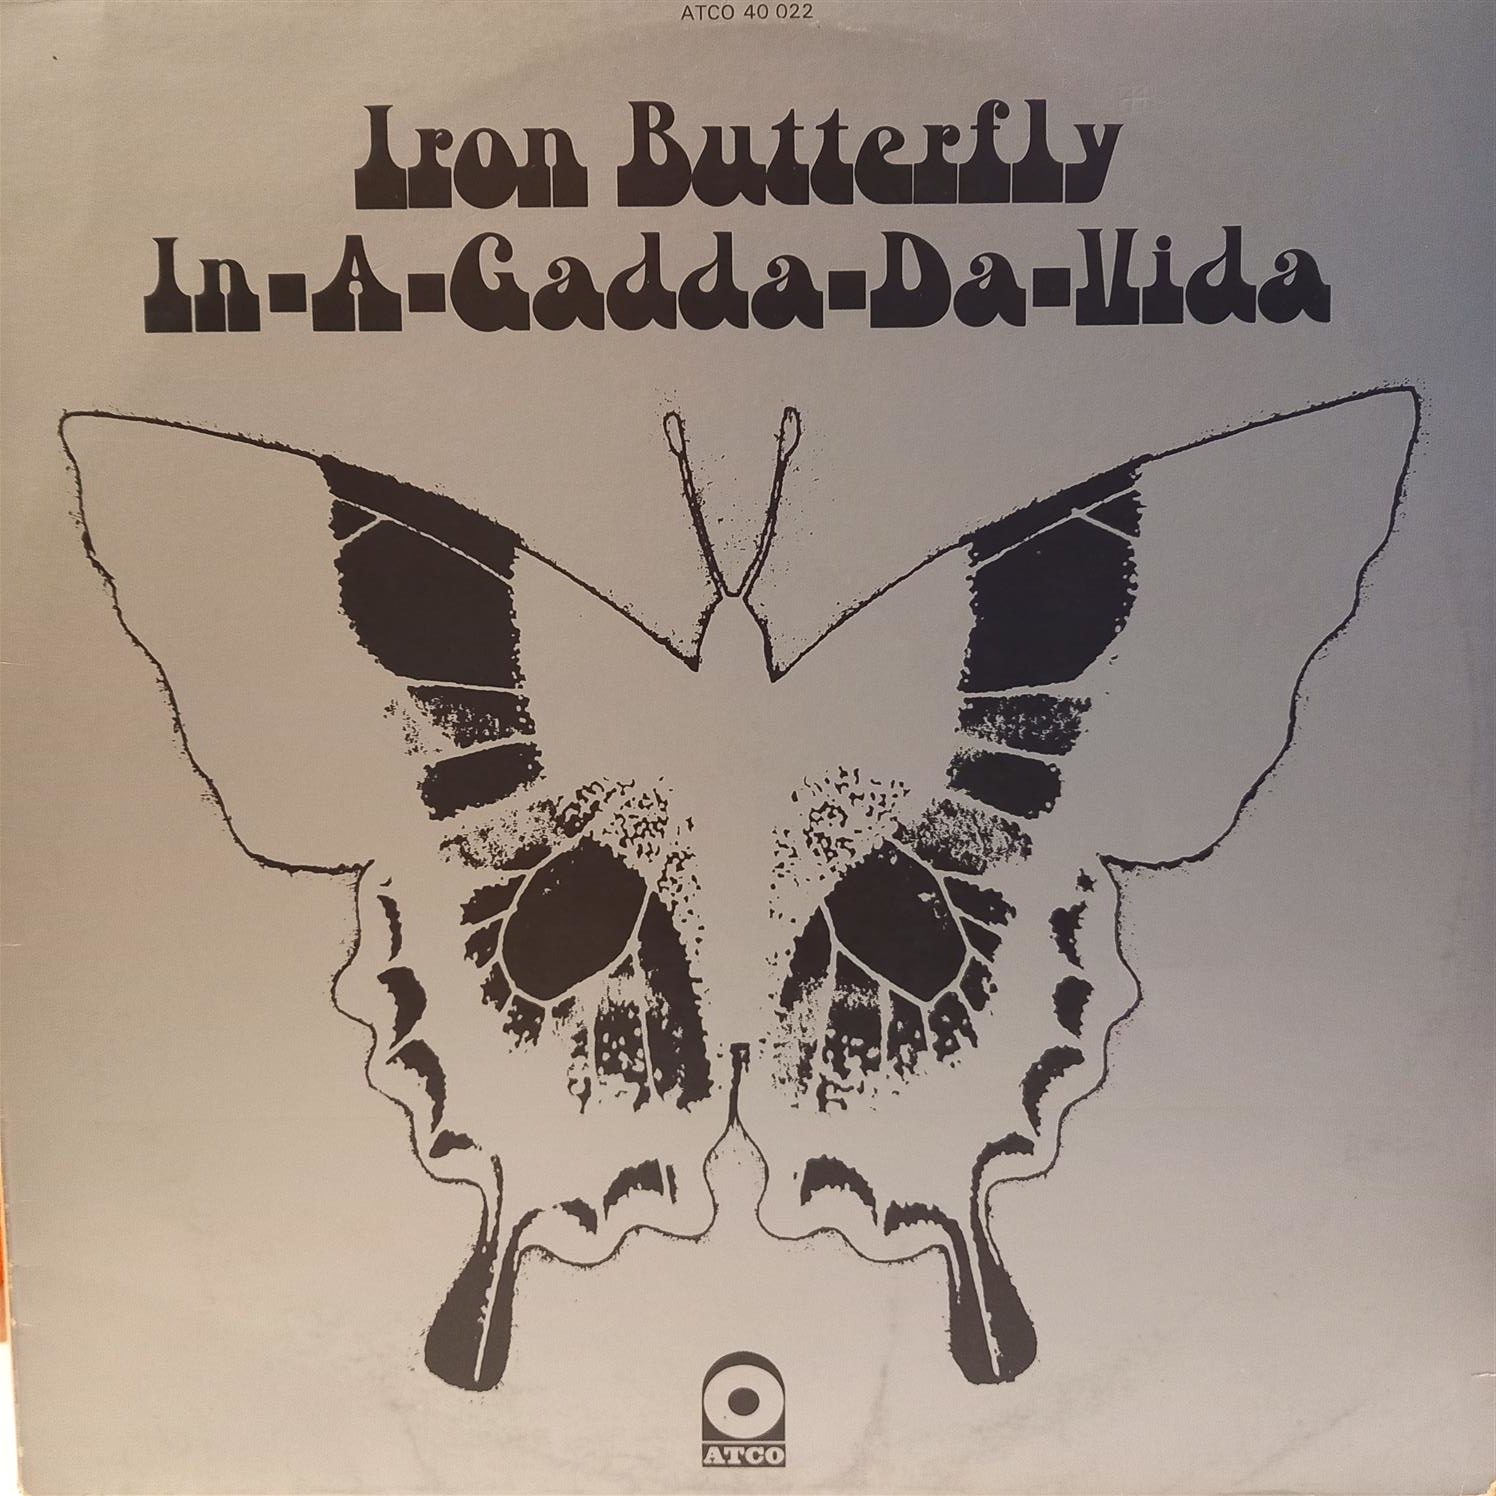 IRON BUTTERFLY – IN A GADDA DA VIDA ON